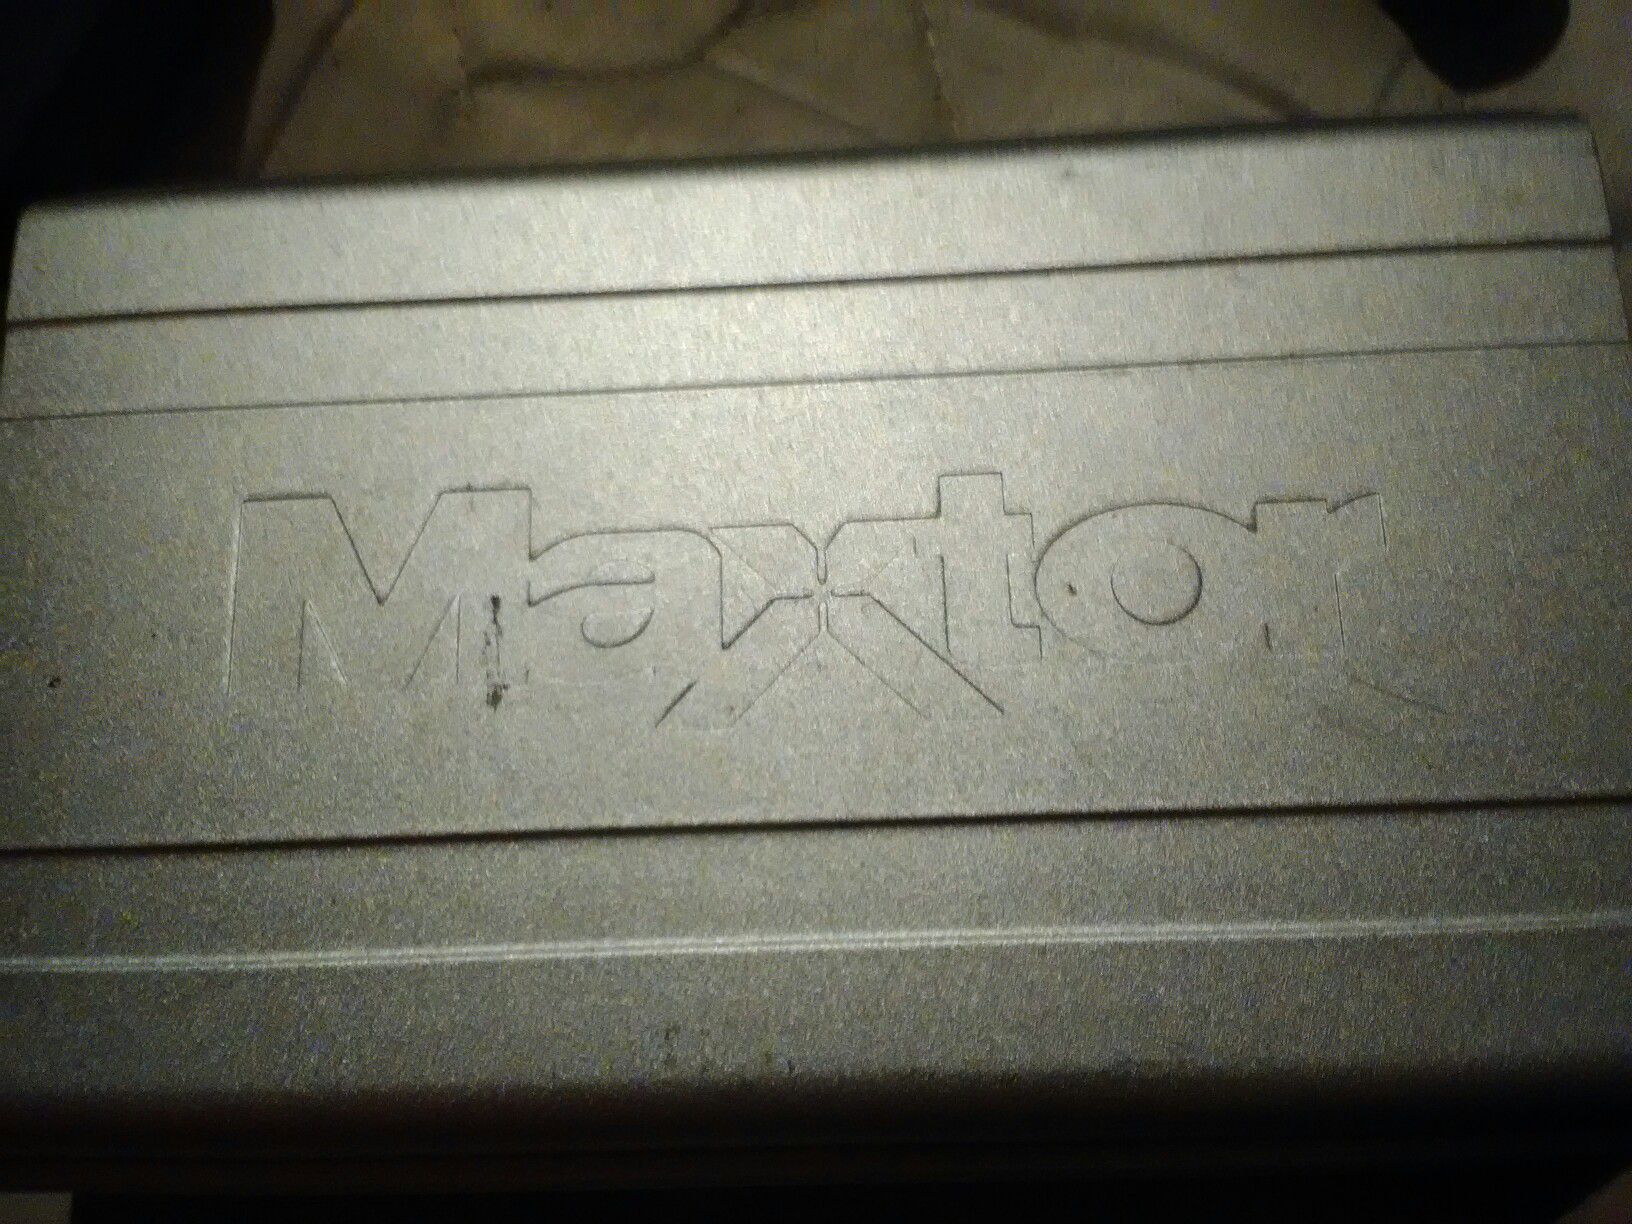 Maxtor USB 80gb hard drive